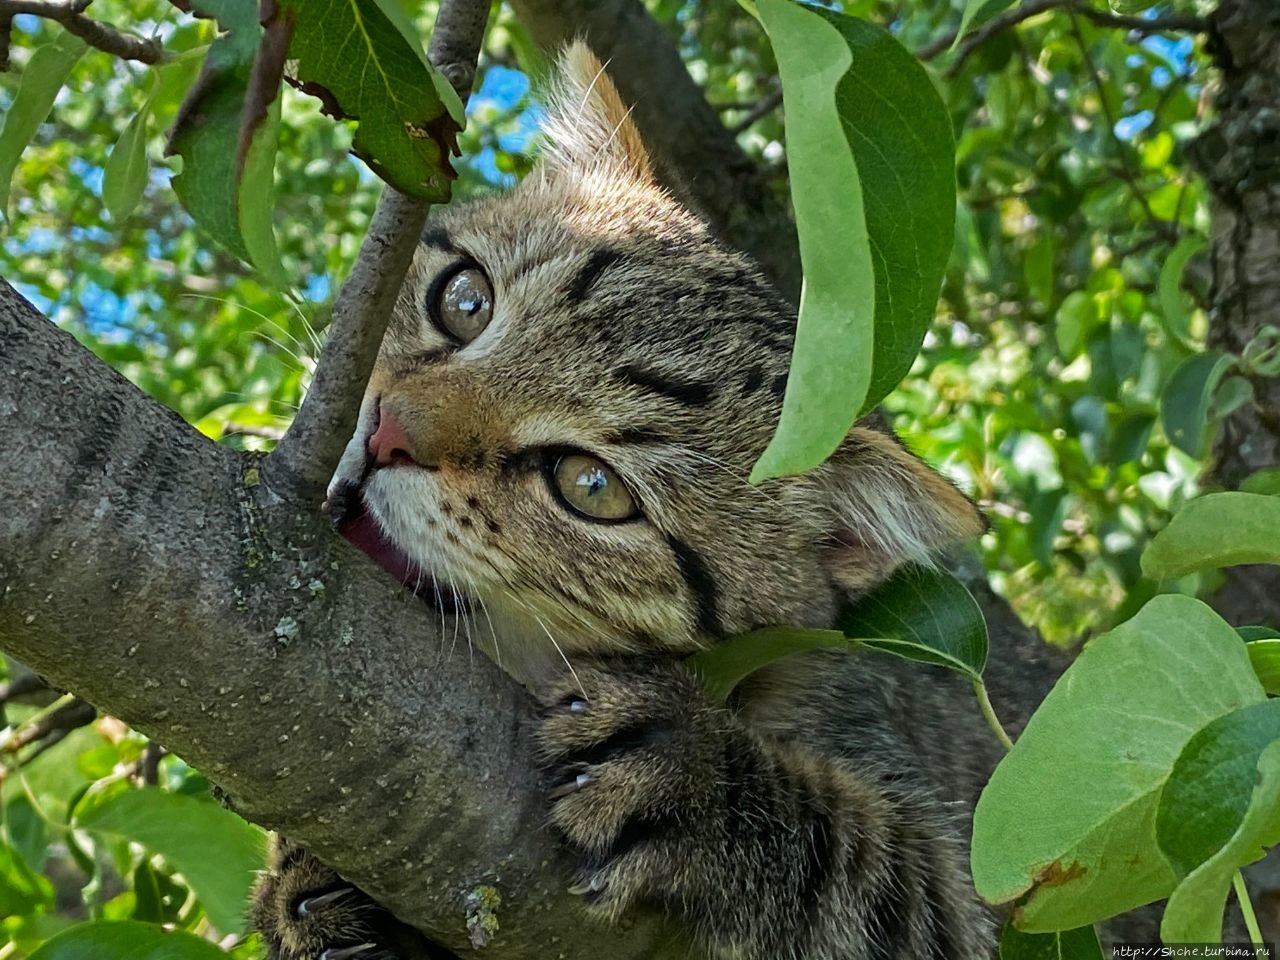 8 августа — Всемирный день кошек (World Cat Day) Рогань, Украина